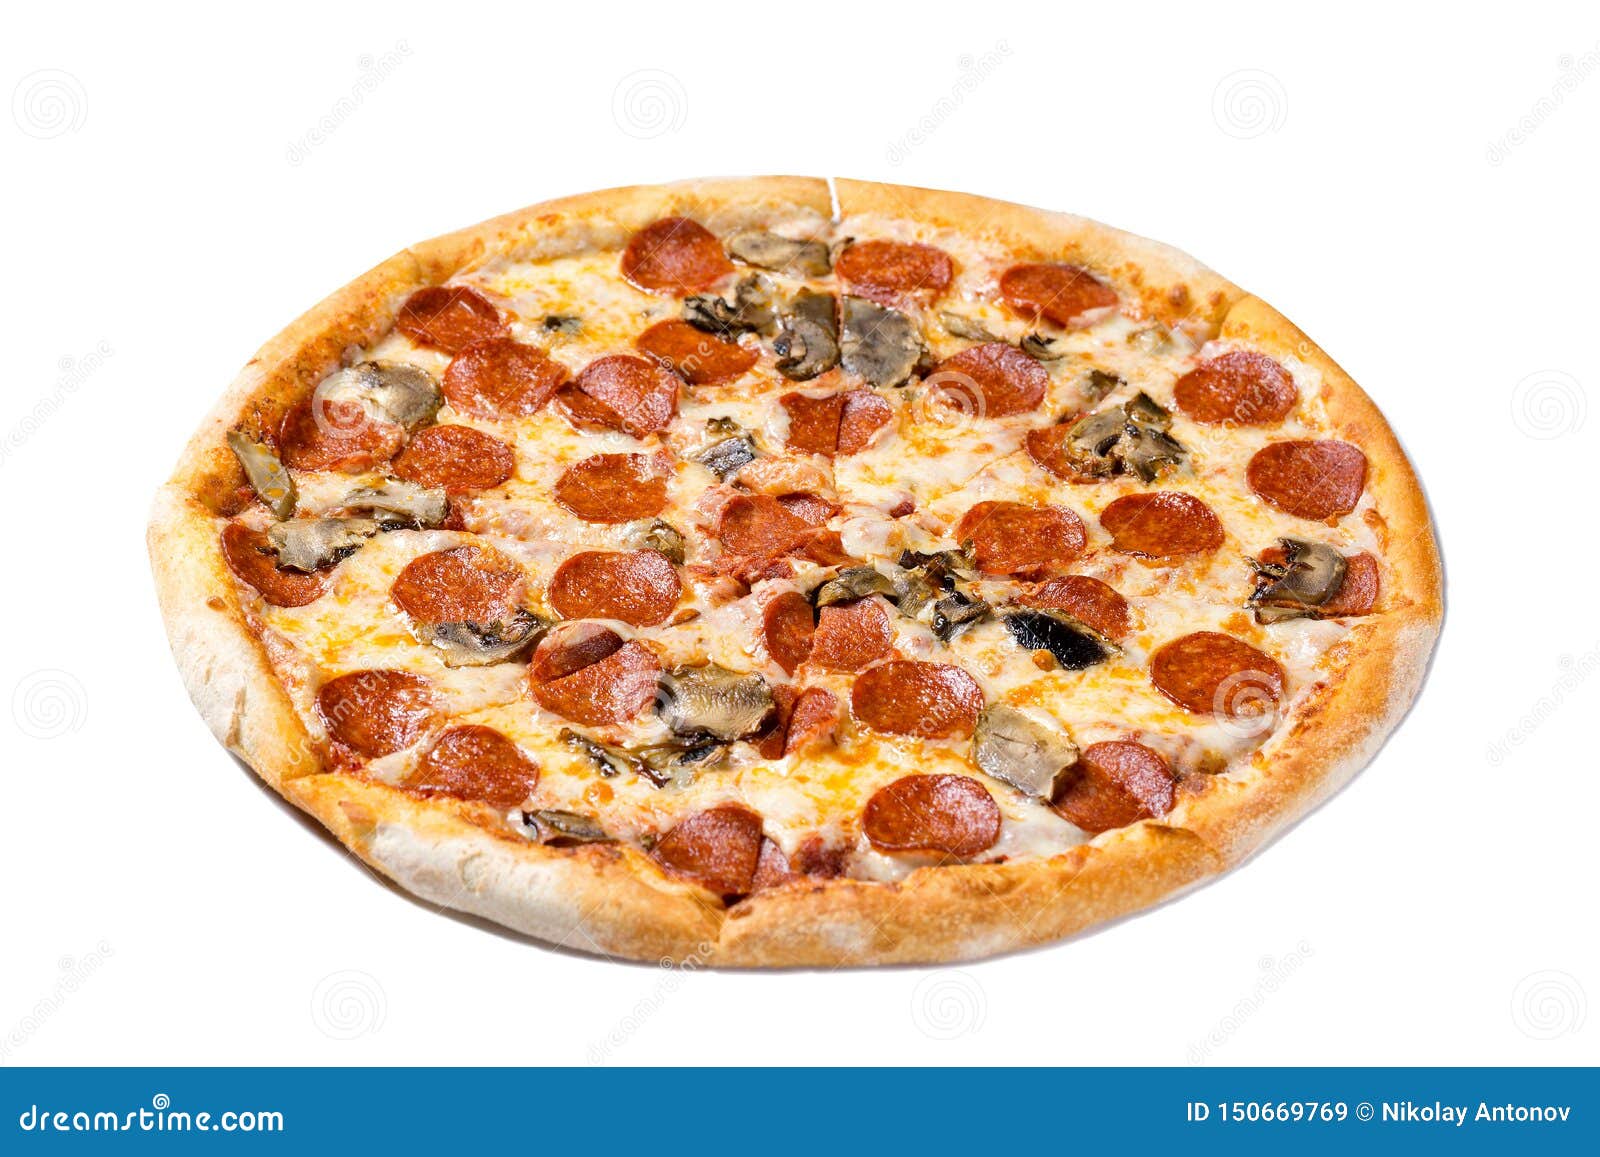 пицца пепперони фреш додо фото 94